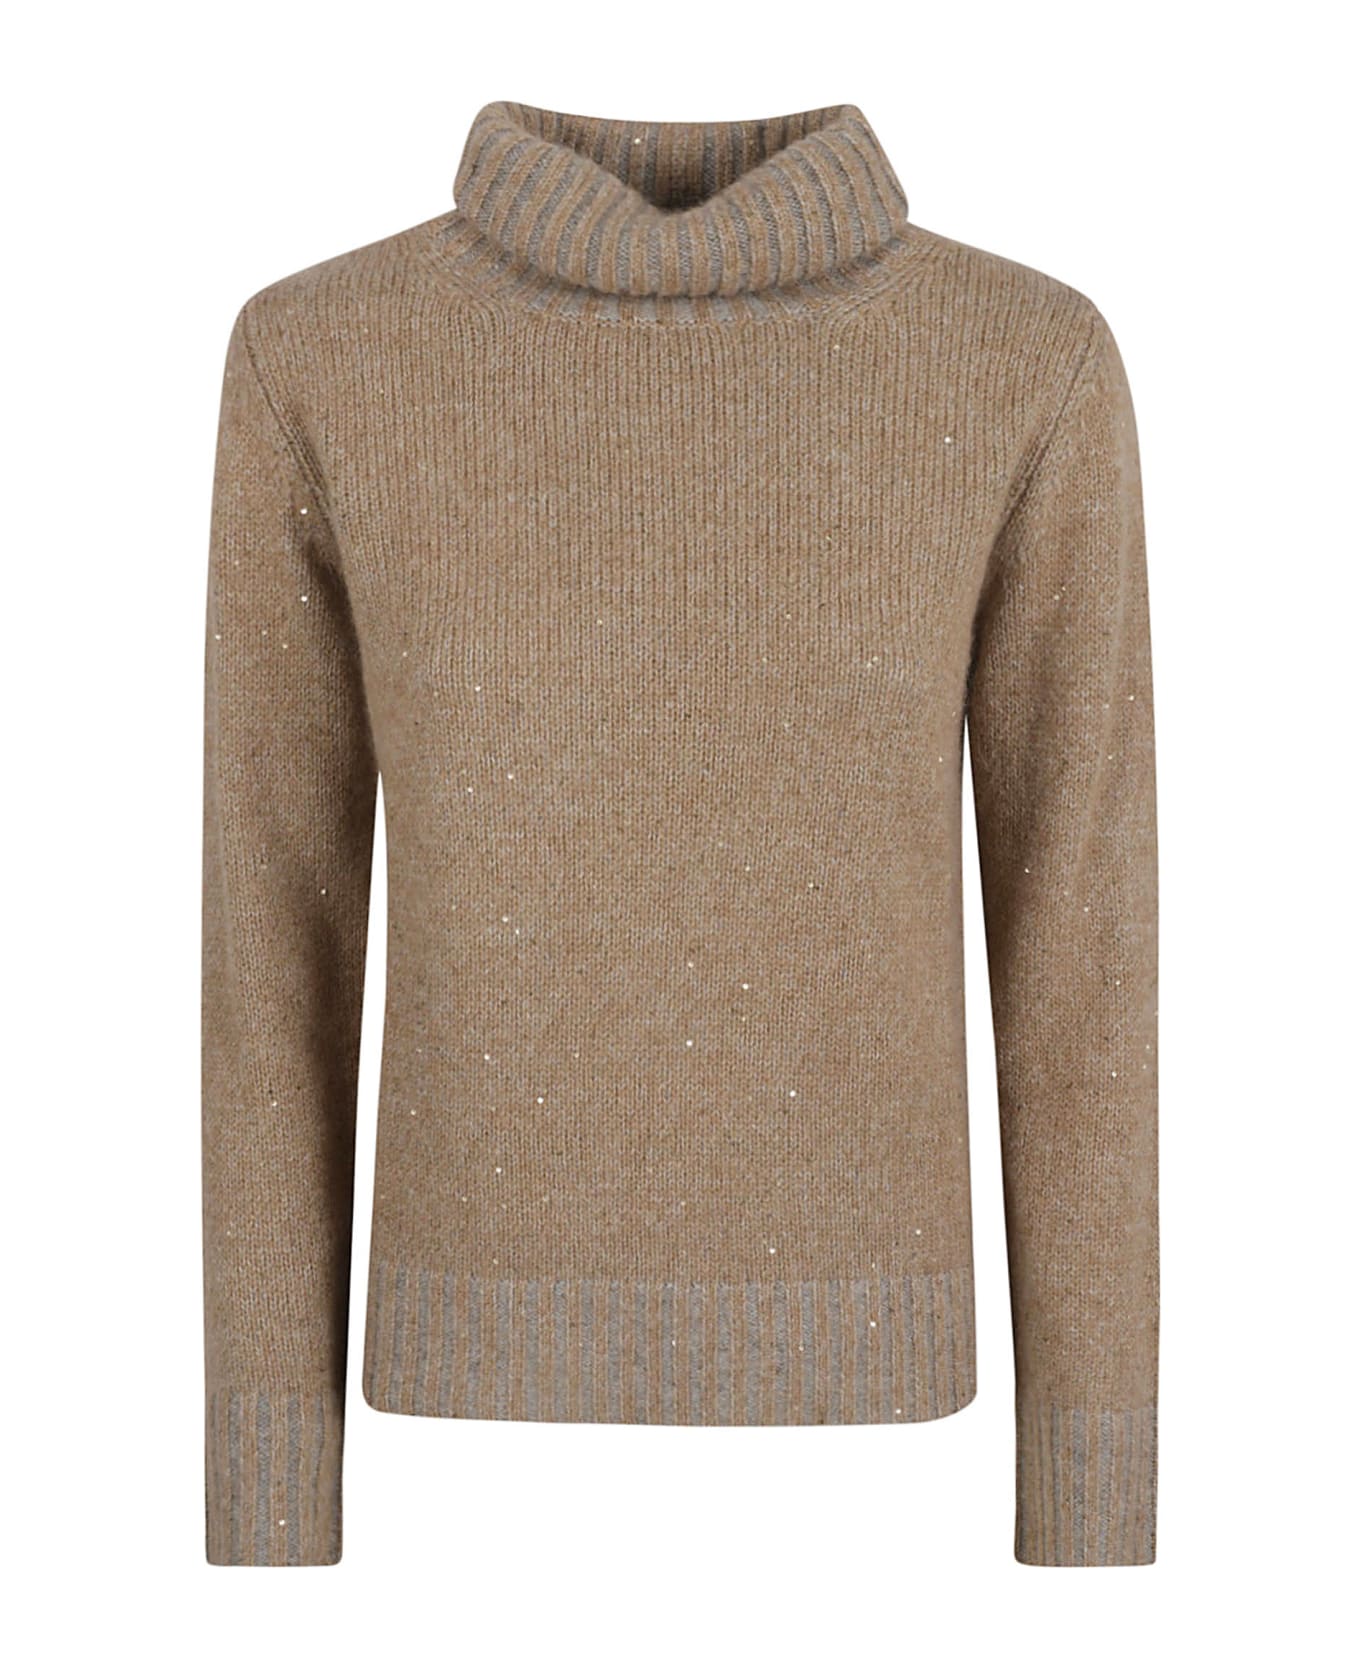 Fabiana Filippi Embellished Turtleneck Rib Sweater - Camel